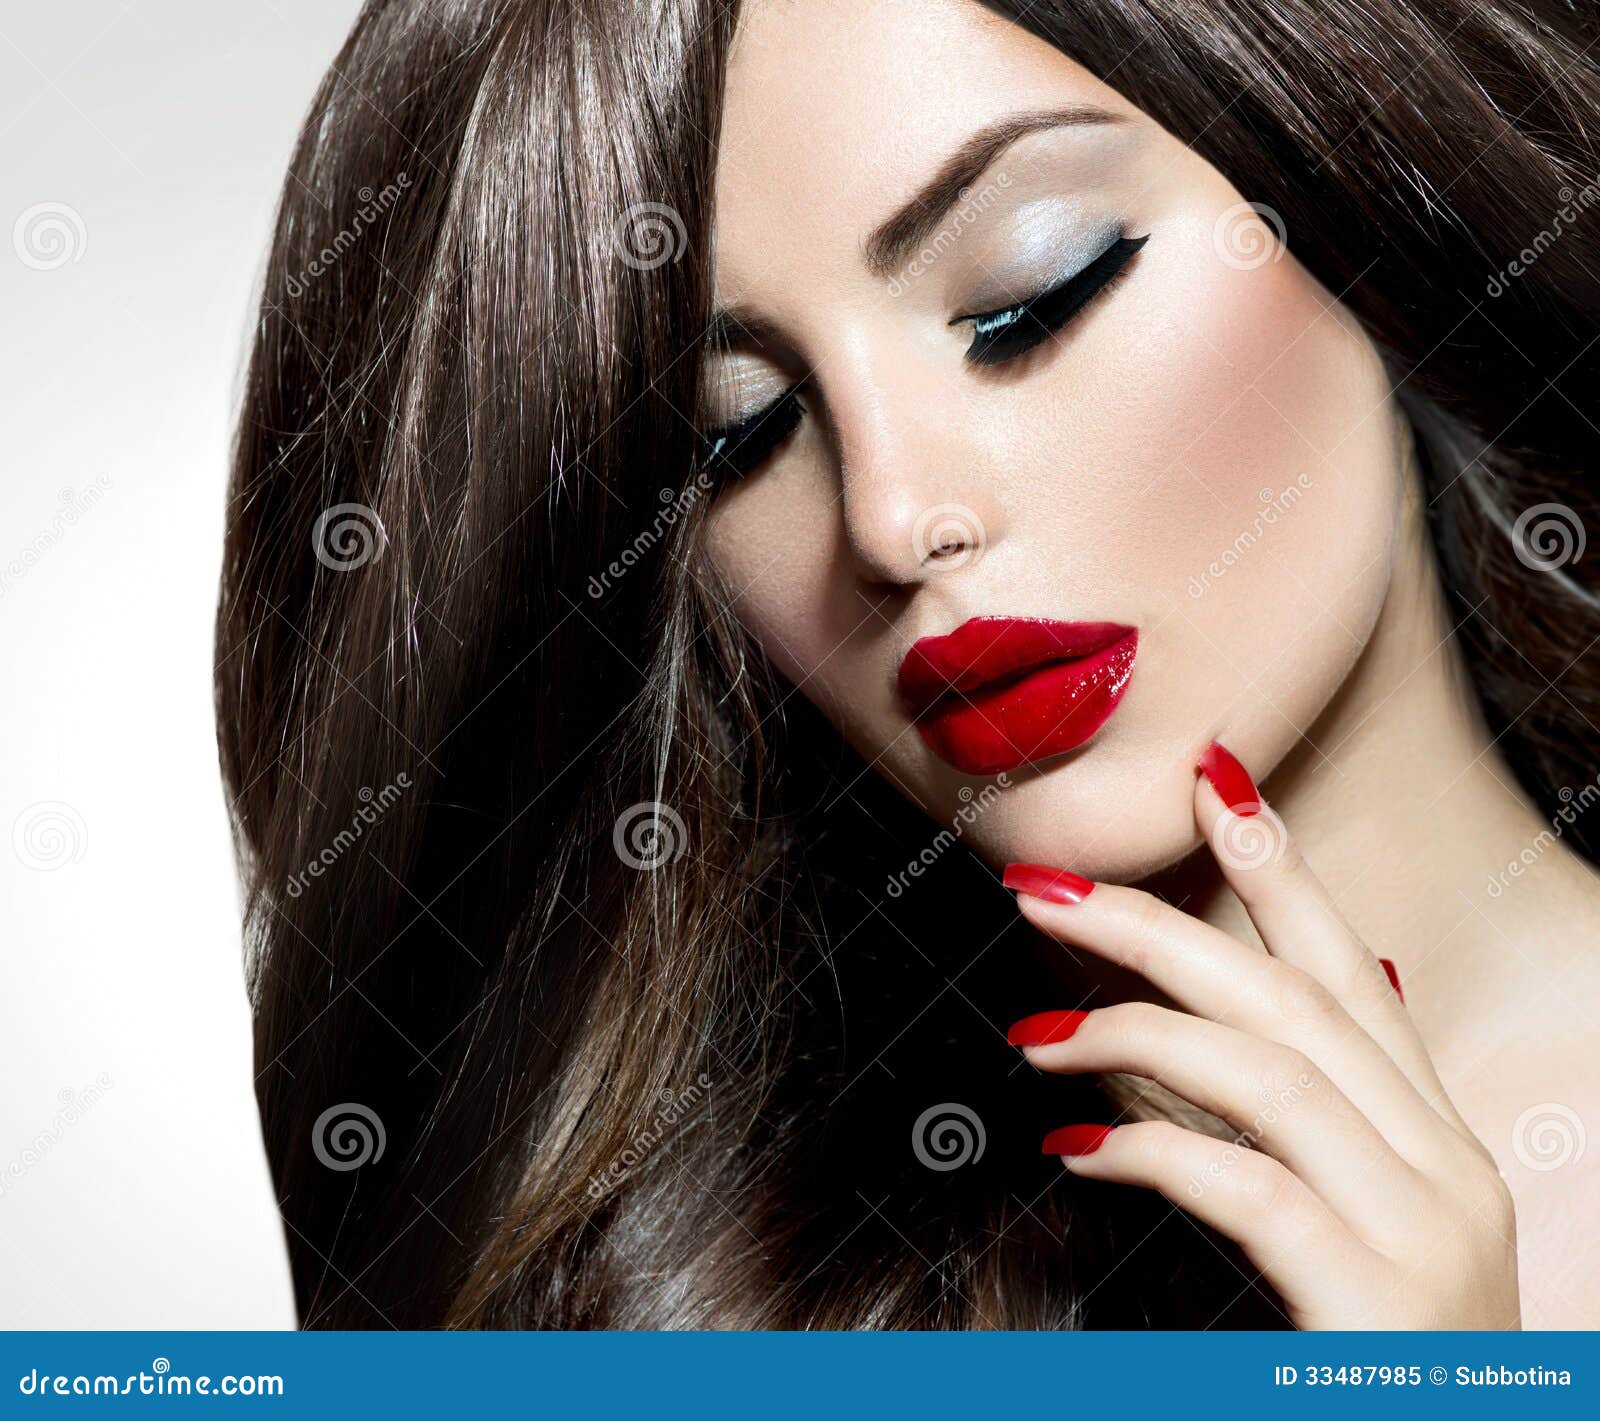 udobnost, izazov - Page 16 Sexy-beauty-girl-red-lips-nails-provocative-make-up-33487985